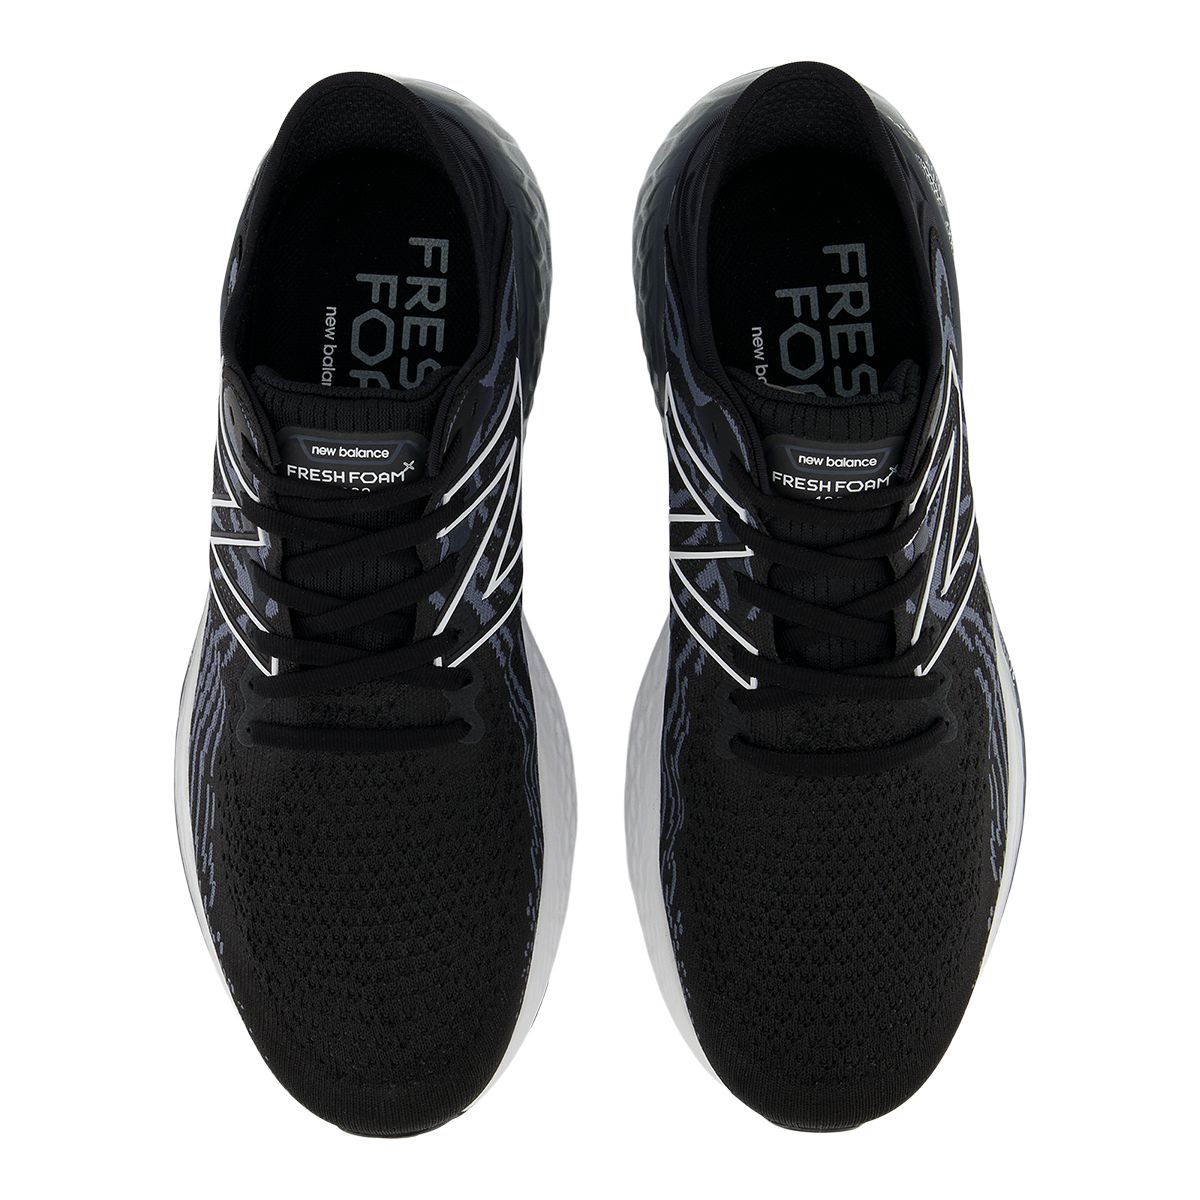 New Balance Men's Fresh Foam 1080v11 Running Shoes Black